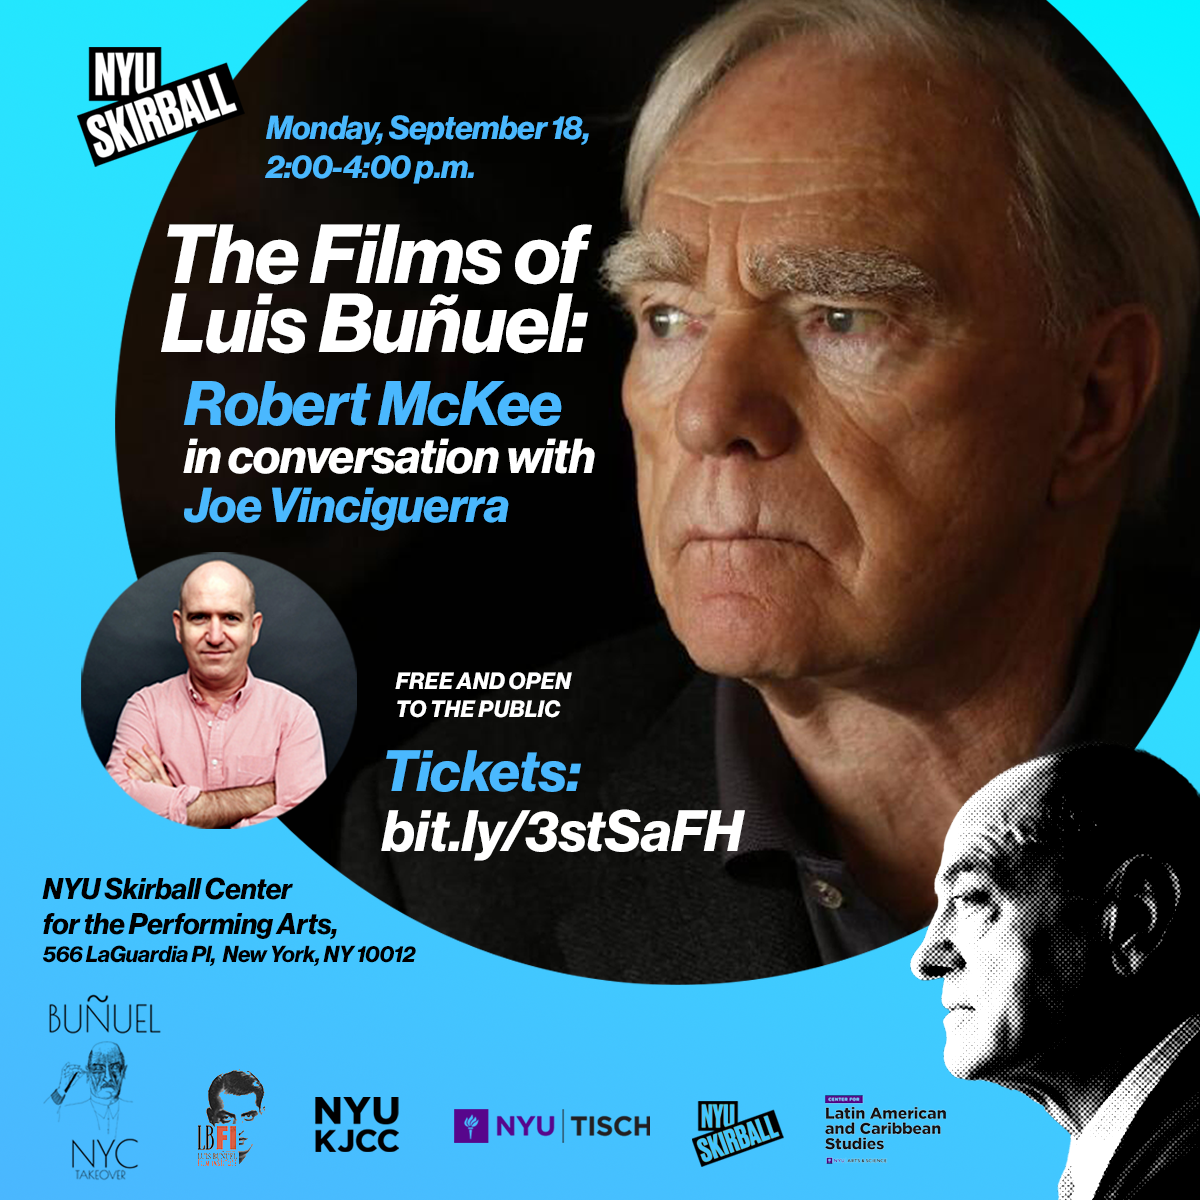 The Films of Luis Buñuel: Robert McKee in conversation with Joe Vinciguerra